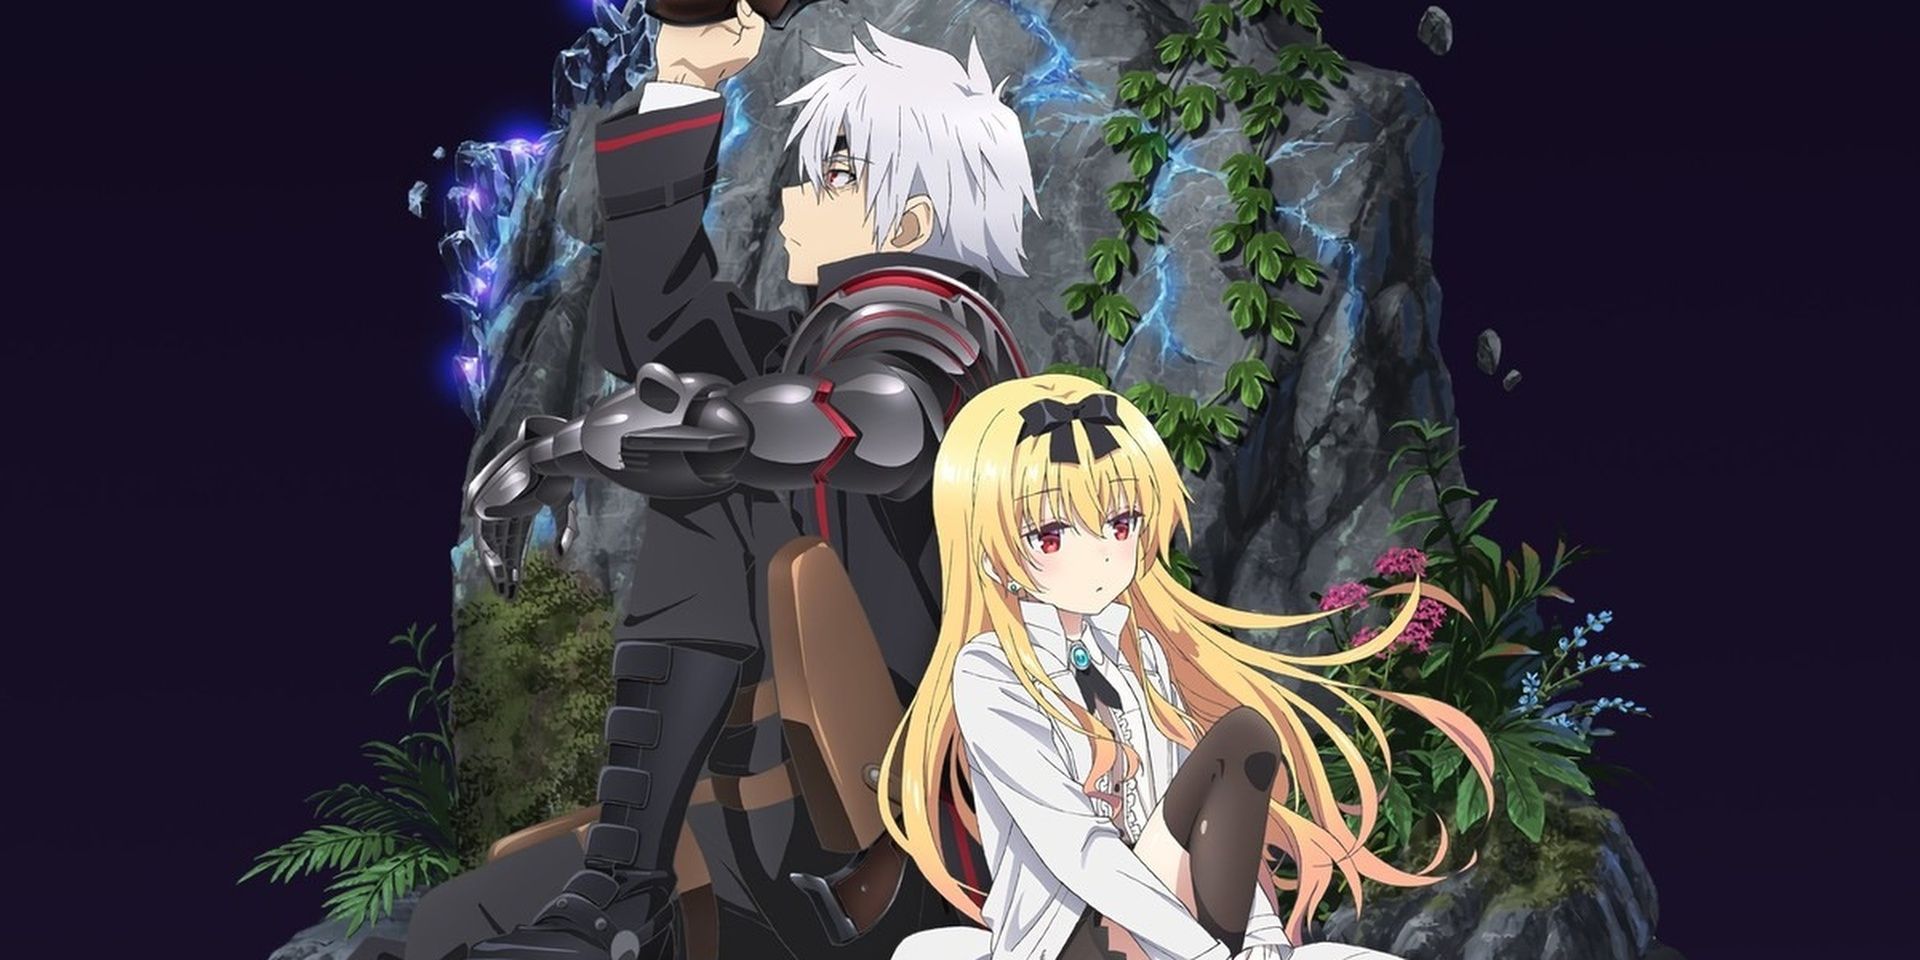 Imagem da capa de Arifureta com dois personagens principais